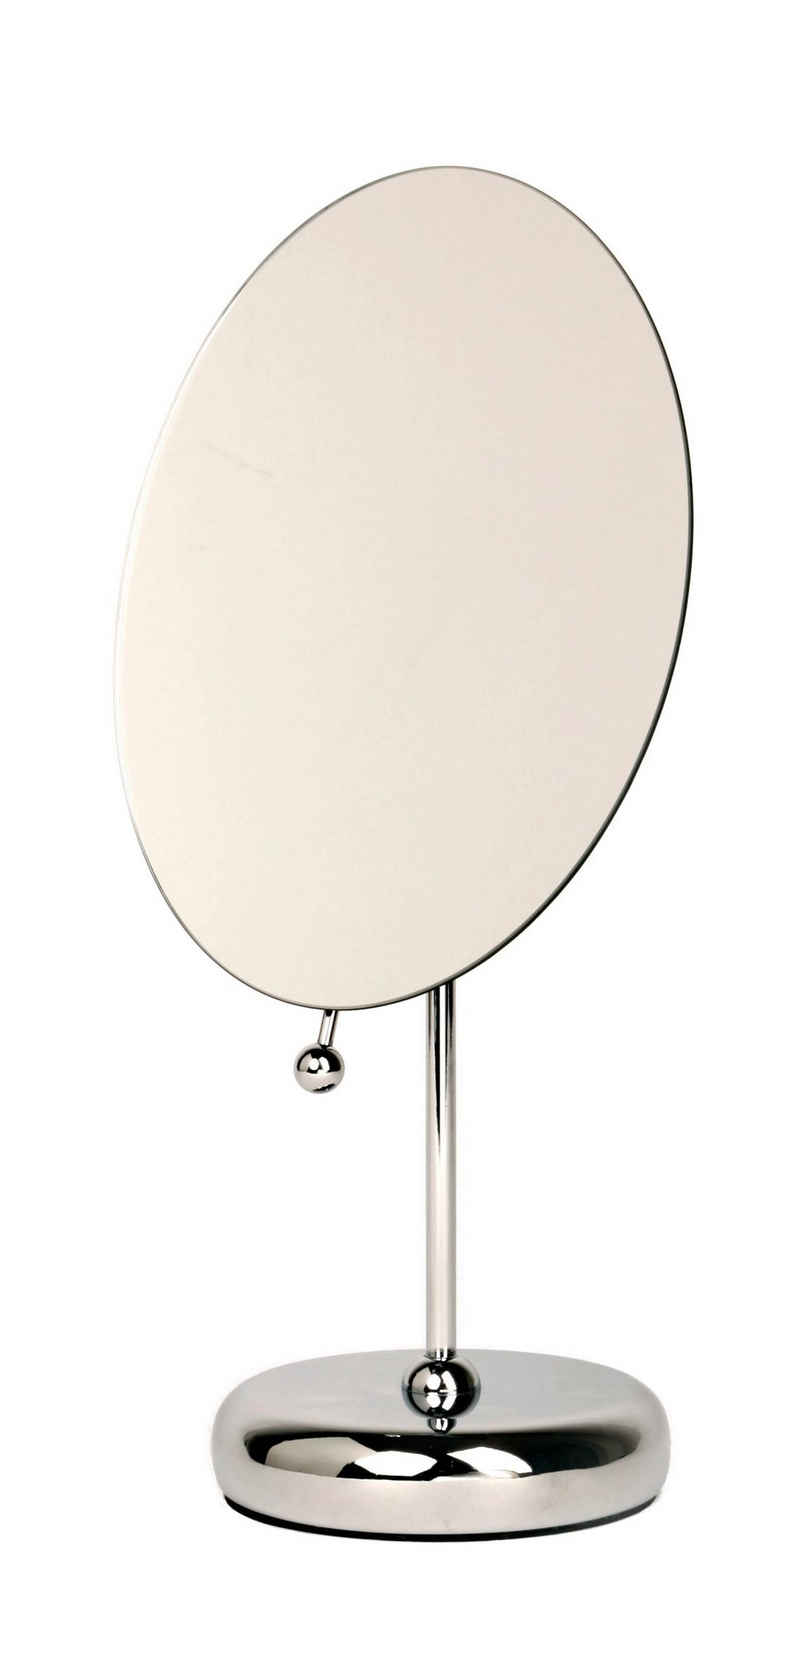 houseproud Kosmetikspiegel Oval Reflex Standspiegel